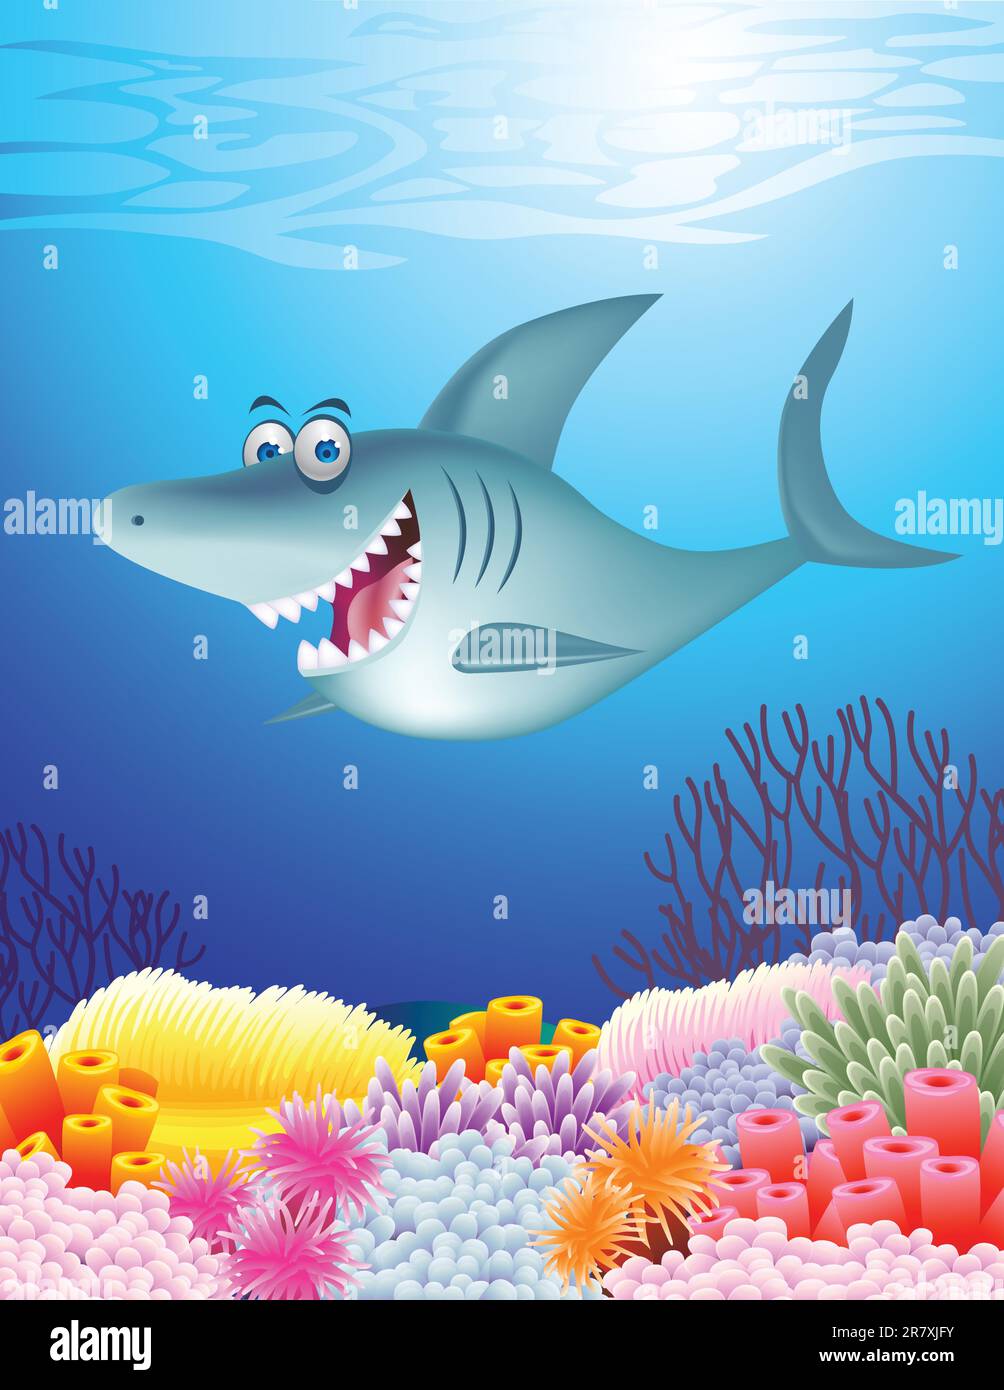 Shark cartoon illustration Stock Vector